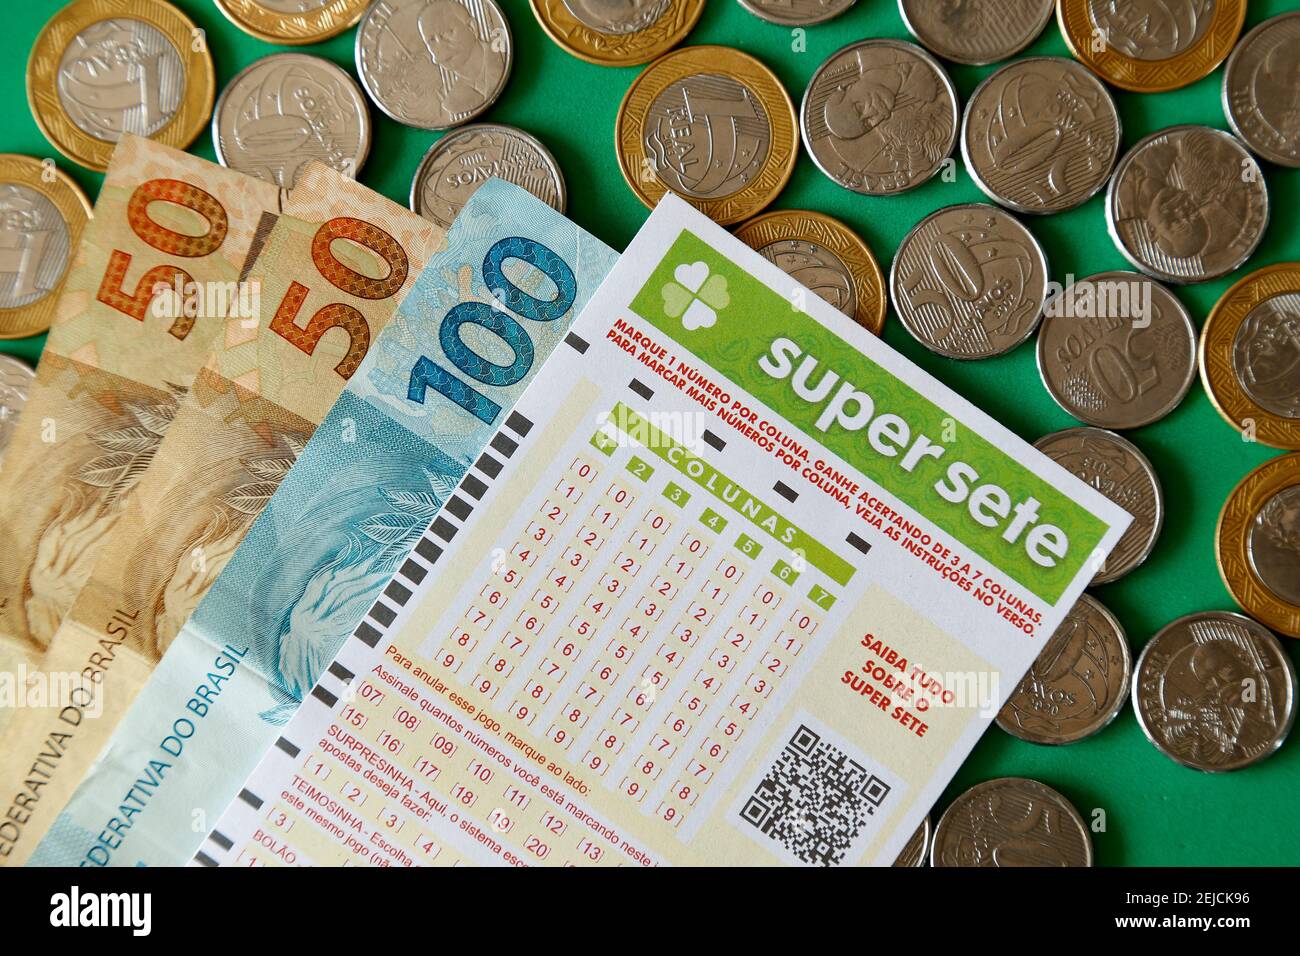 Minas Gerais, Brasile - 22 febbraio 2021: Banconote, monete e biglietto per lotteria Caixa Super sete Foto Stock